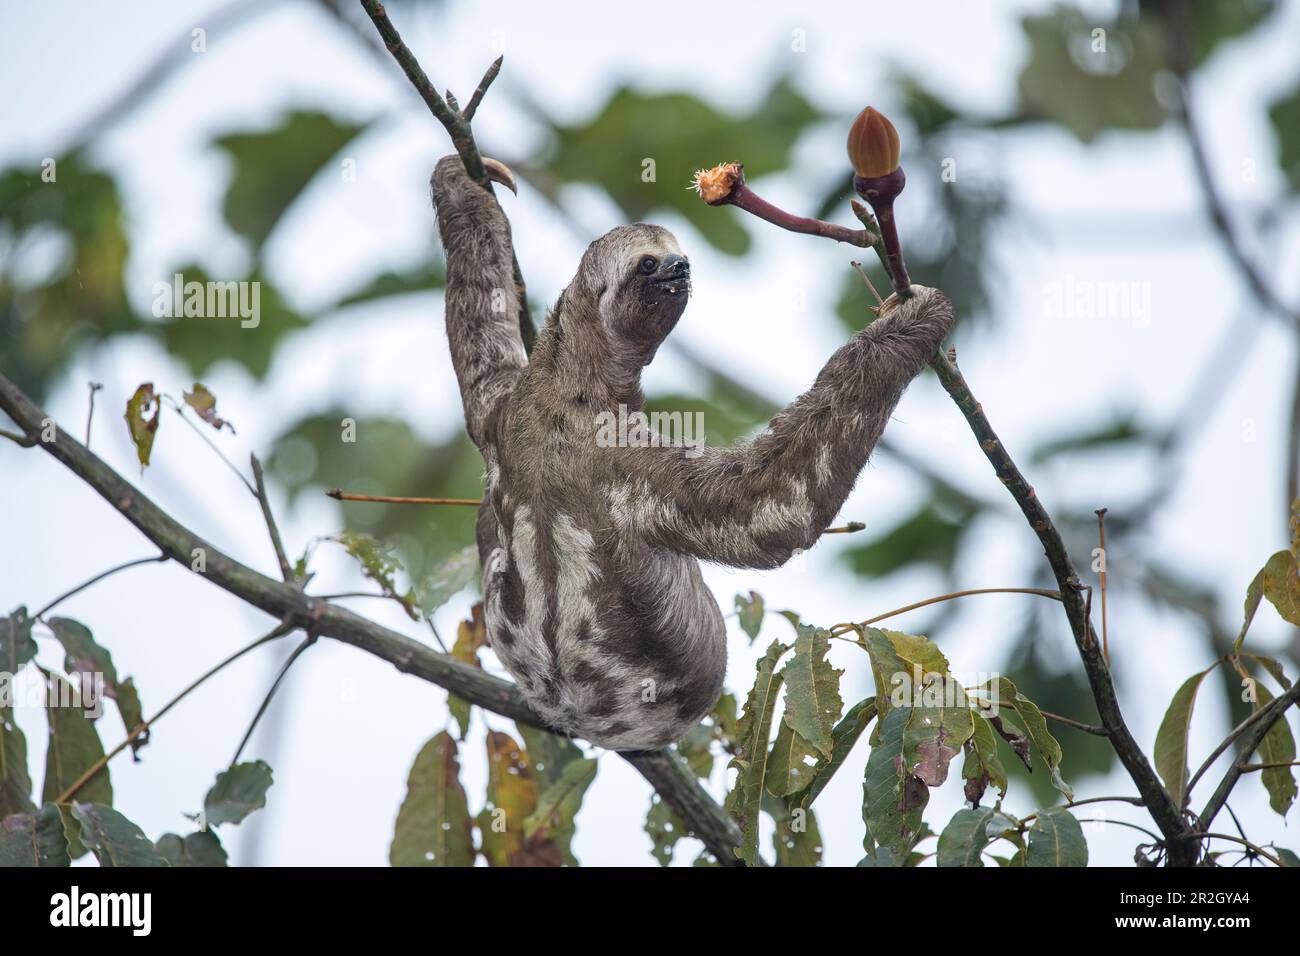 Ein braunes Dreizehenfaultier (Bradypus variegatus) hält an, während es zwei Zweige hält, nahe Manaus, Amazonas, Brasilien, Südamerika Stockfoto